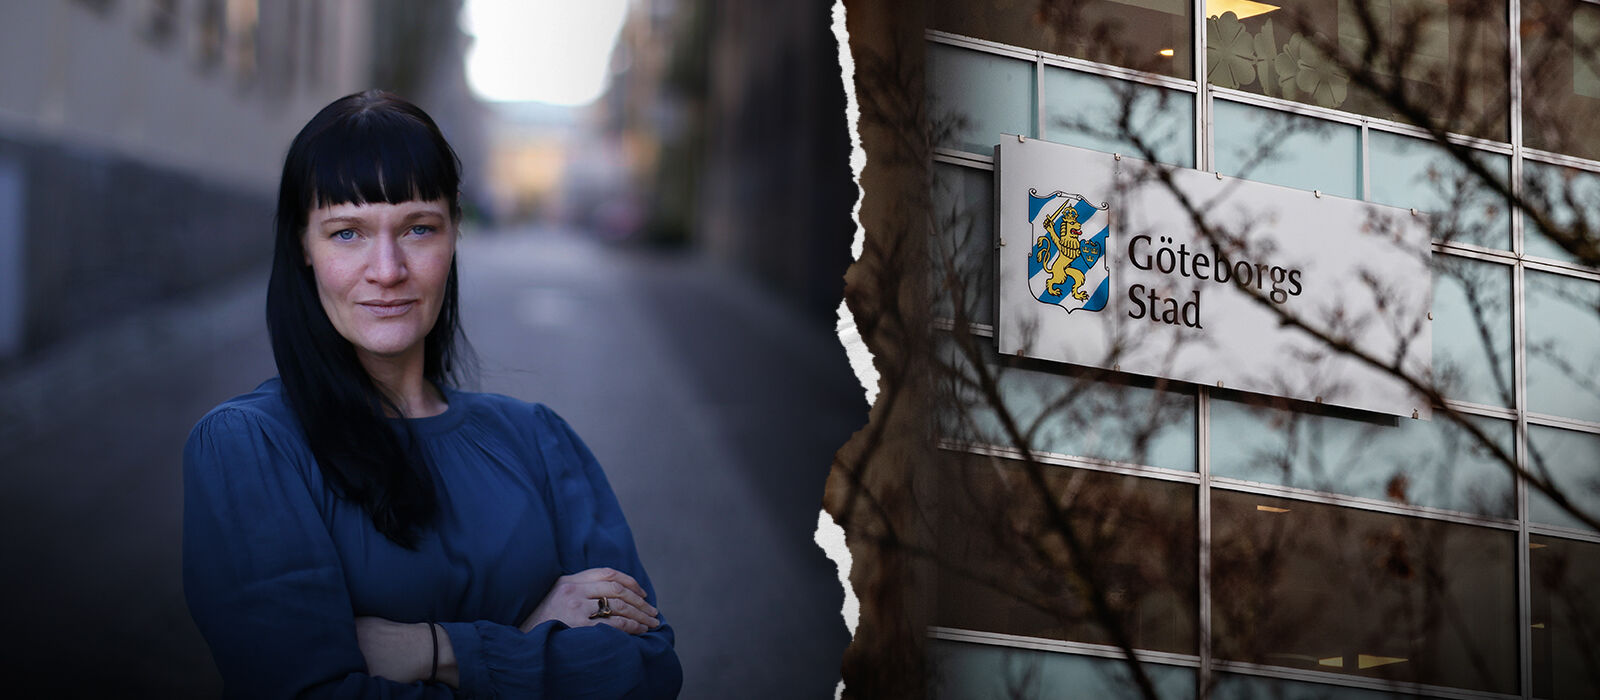 Jenny Broman är kommunalråd för Vänsterpartiet i Göteborg och högsta ansvariga politiker för socialtjänsten.